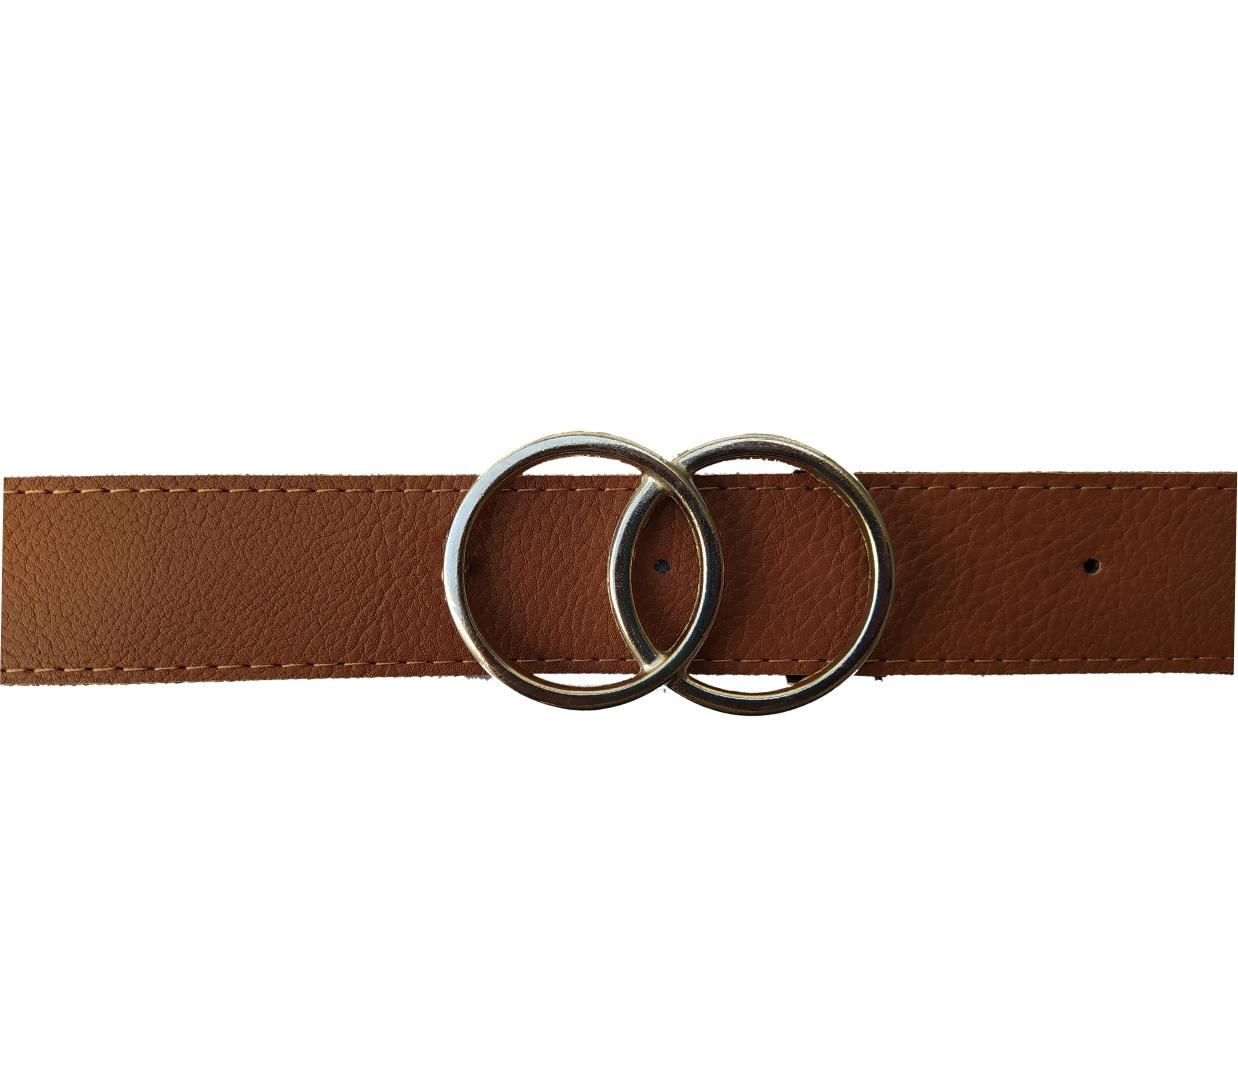 Cinturon de Mujer de Cuero Sintetico Hebilla Doble Circulo 105x3.5cm Suela